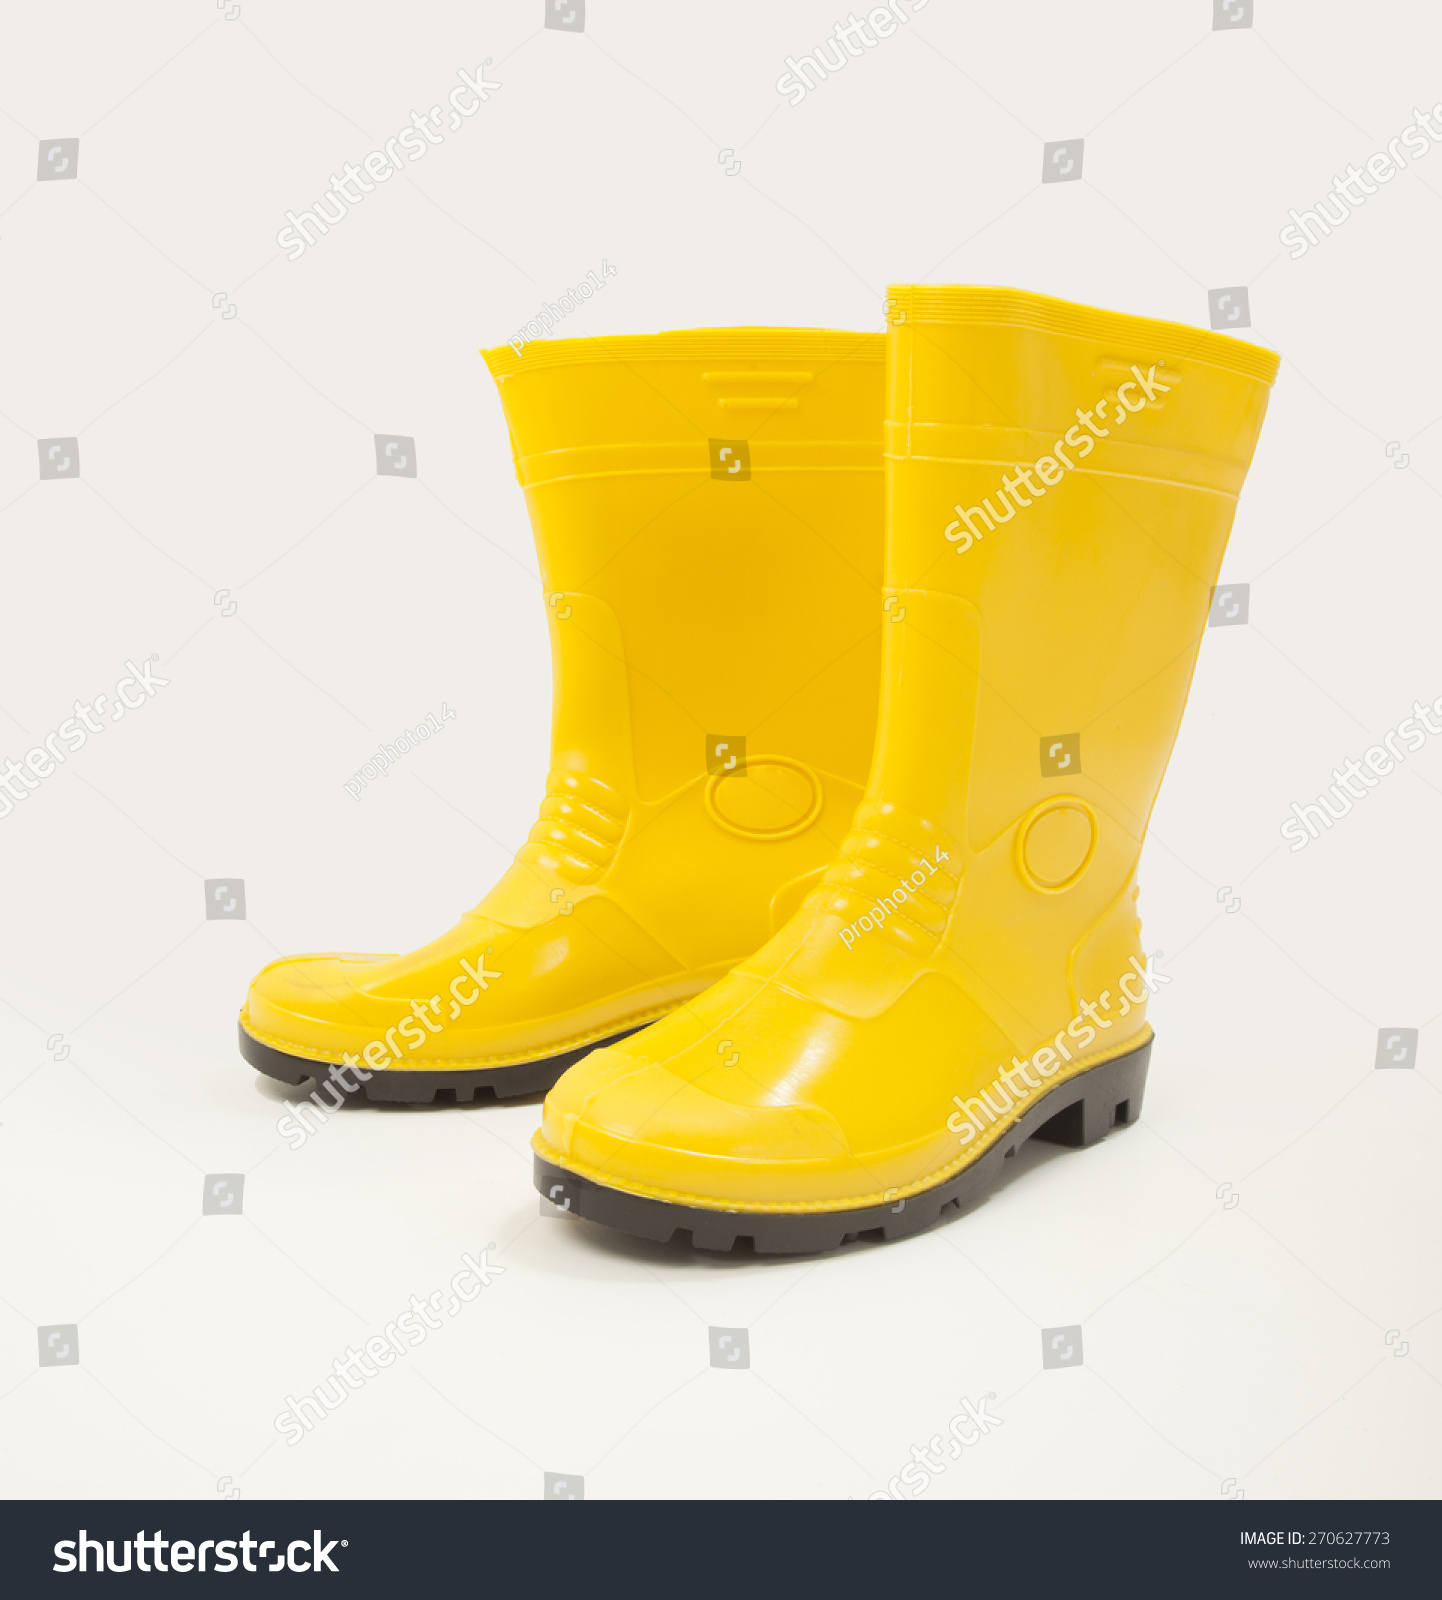 Yellow Gumboot Stock Photo 270627773 : Shutterstock